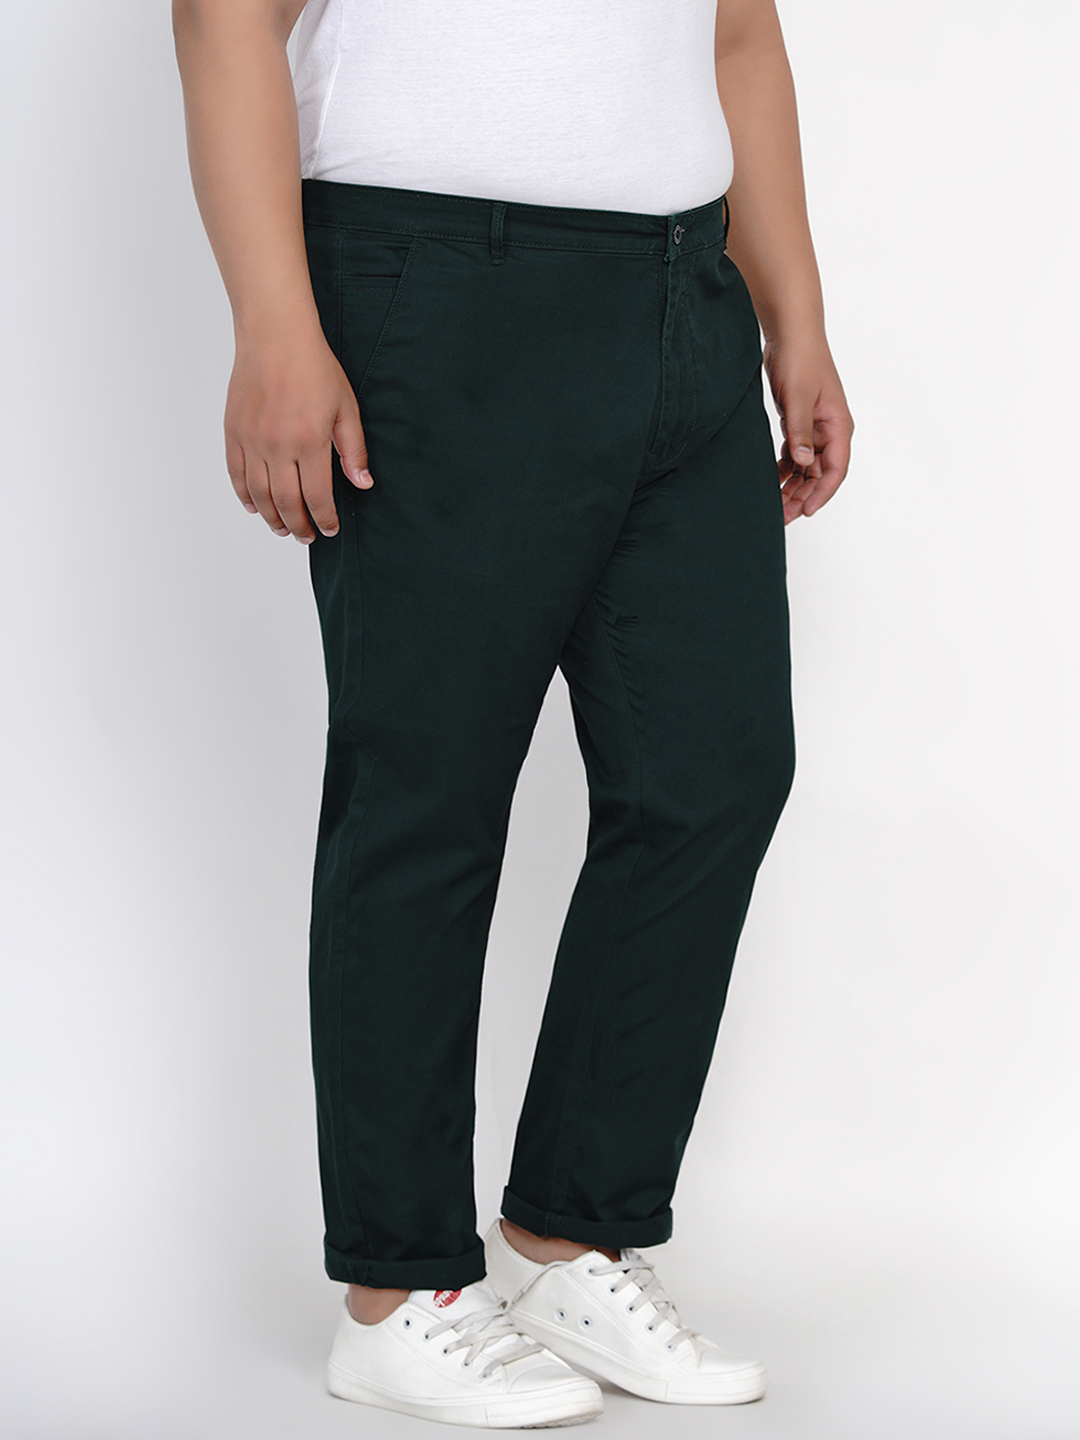 bottomwear/trousers/JPTR2161L/jptr2161l-3.jpg